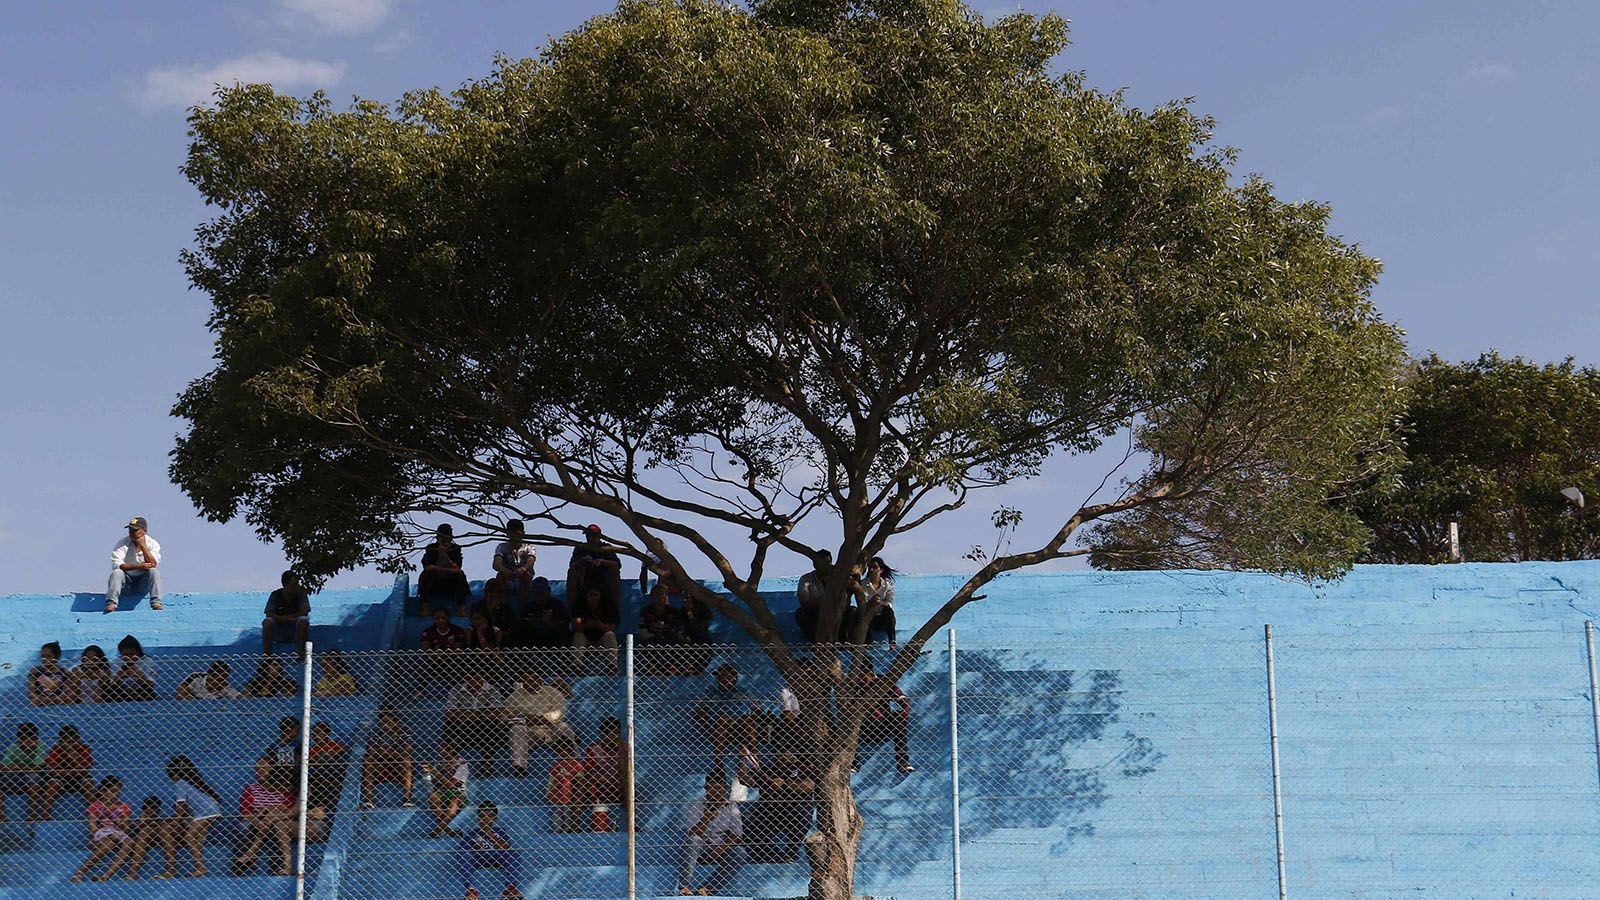 
                <strong>Estadio Tomas Beggan Correa (Paraguay)</strong><br>
                Beim paraguayischen Zweitligisten Resistencia Sport Club ist der treueste Zuschauer ein Baum. Der sogenannte Lapacho-Baum war schon da, bevor die Tribüne des Stadions gebaut wurde. "Wir haben keine Sekunde daran, gedacht ihn zu fällen", sagte Präsident Roberto Damian Garcete der Nachrichtenagentur "Efe". Also wurde die Tribüne um den Baum herum gebaut und das Gewächs zum beliebten Schattenspender und echten Star im Verein. Zum hundertjährigen Vereinsjubiläum hat der Klub ihn zum offizielle Ehrenmitglied des Vereins ernannt.
              